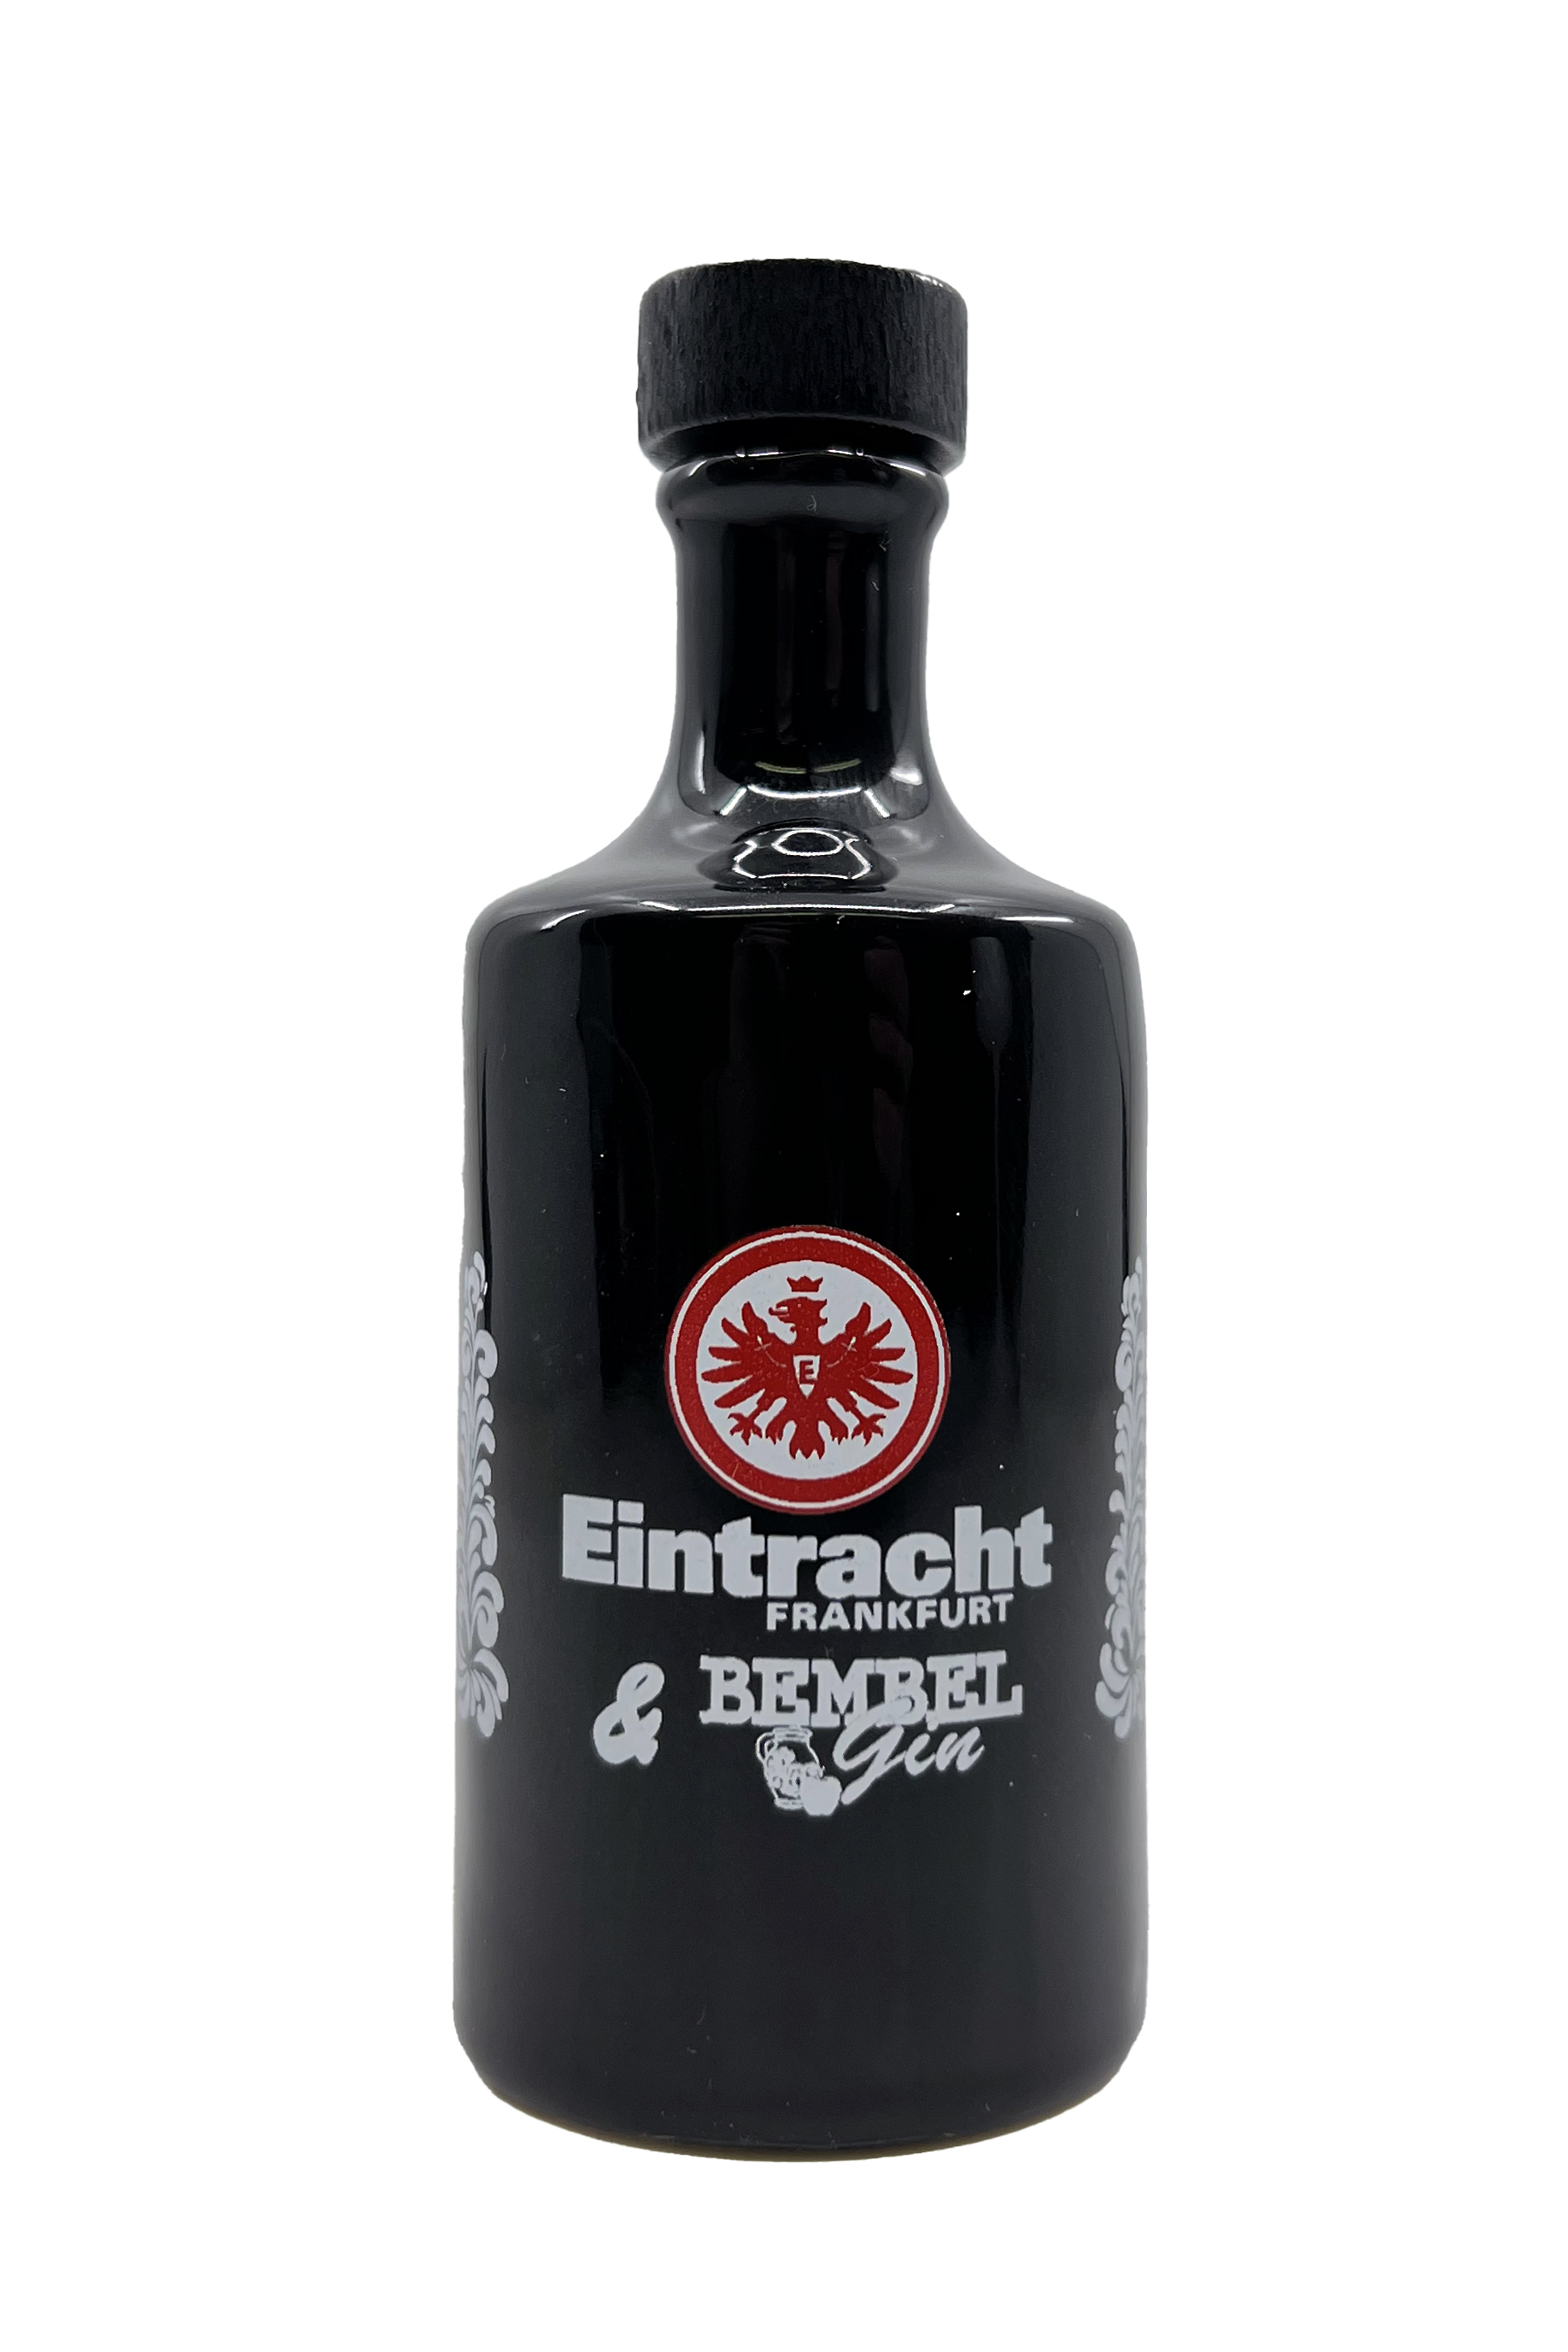 Bembel Gin Miniatur - *Eintracht Frankfurt Edition* - Apfel Gin aus Hessen 0,05l 43% vol.